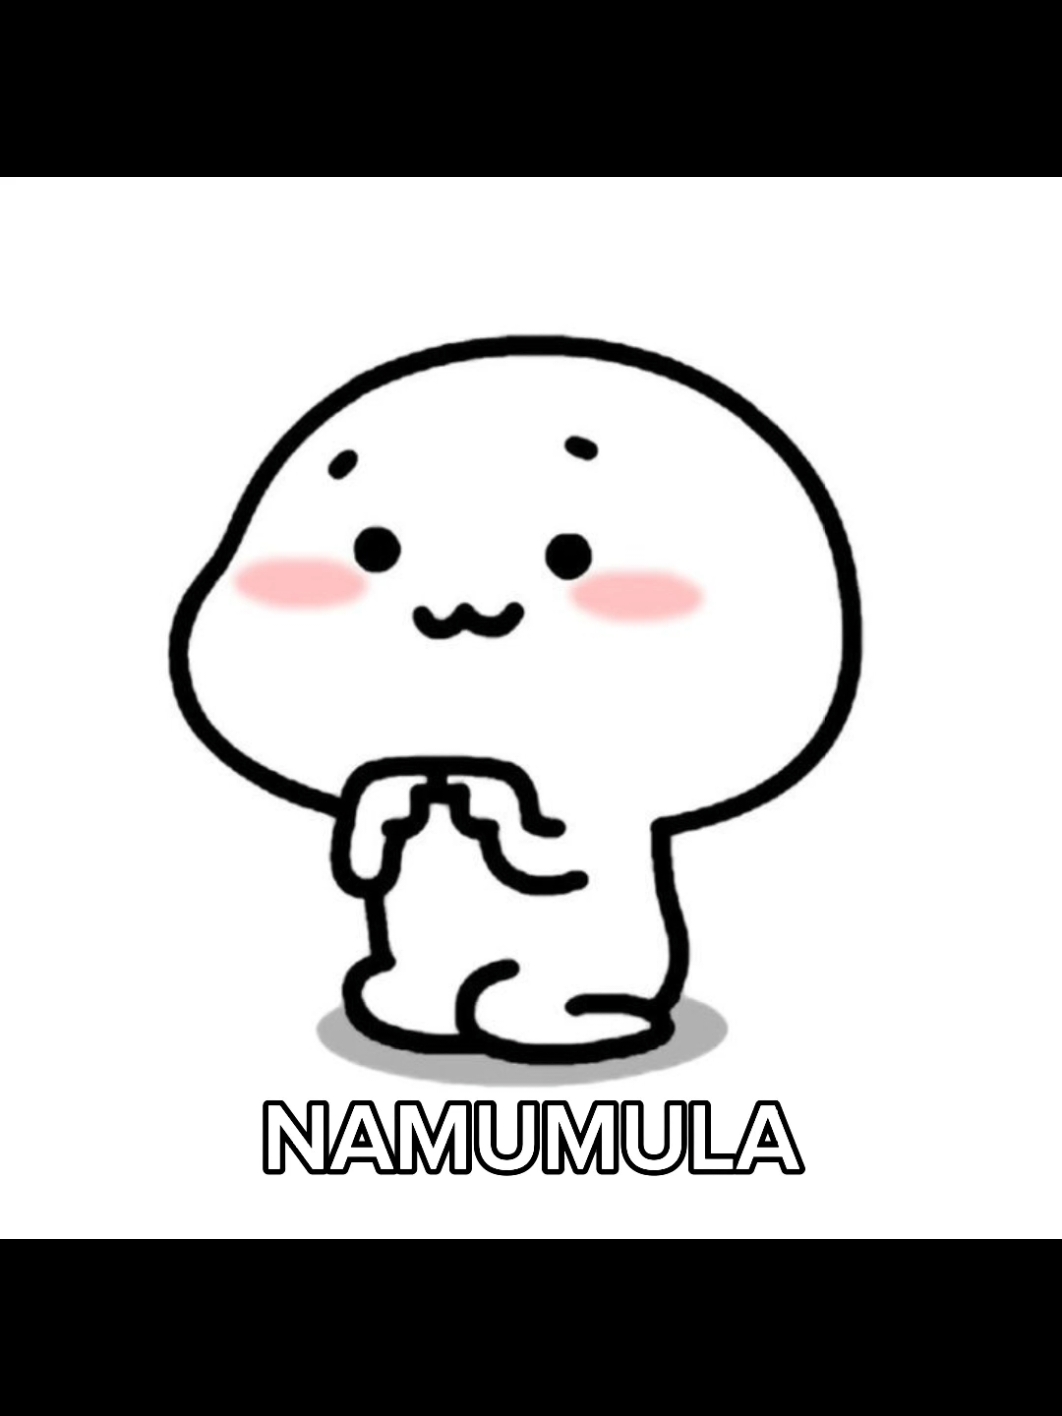 Namumula by Maki 'Di kasi tayo pang kantang 